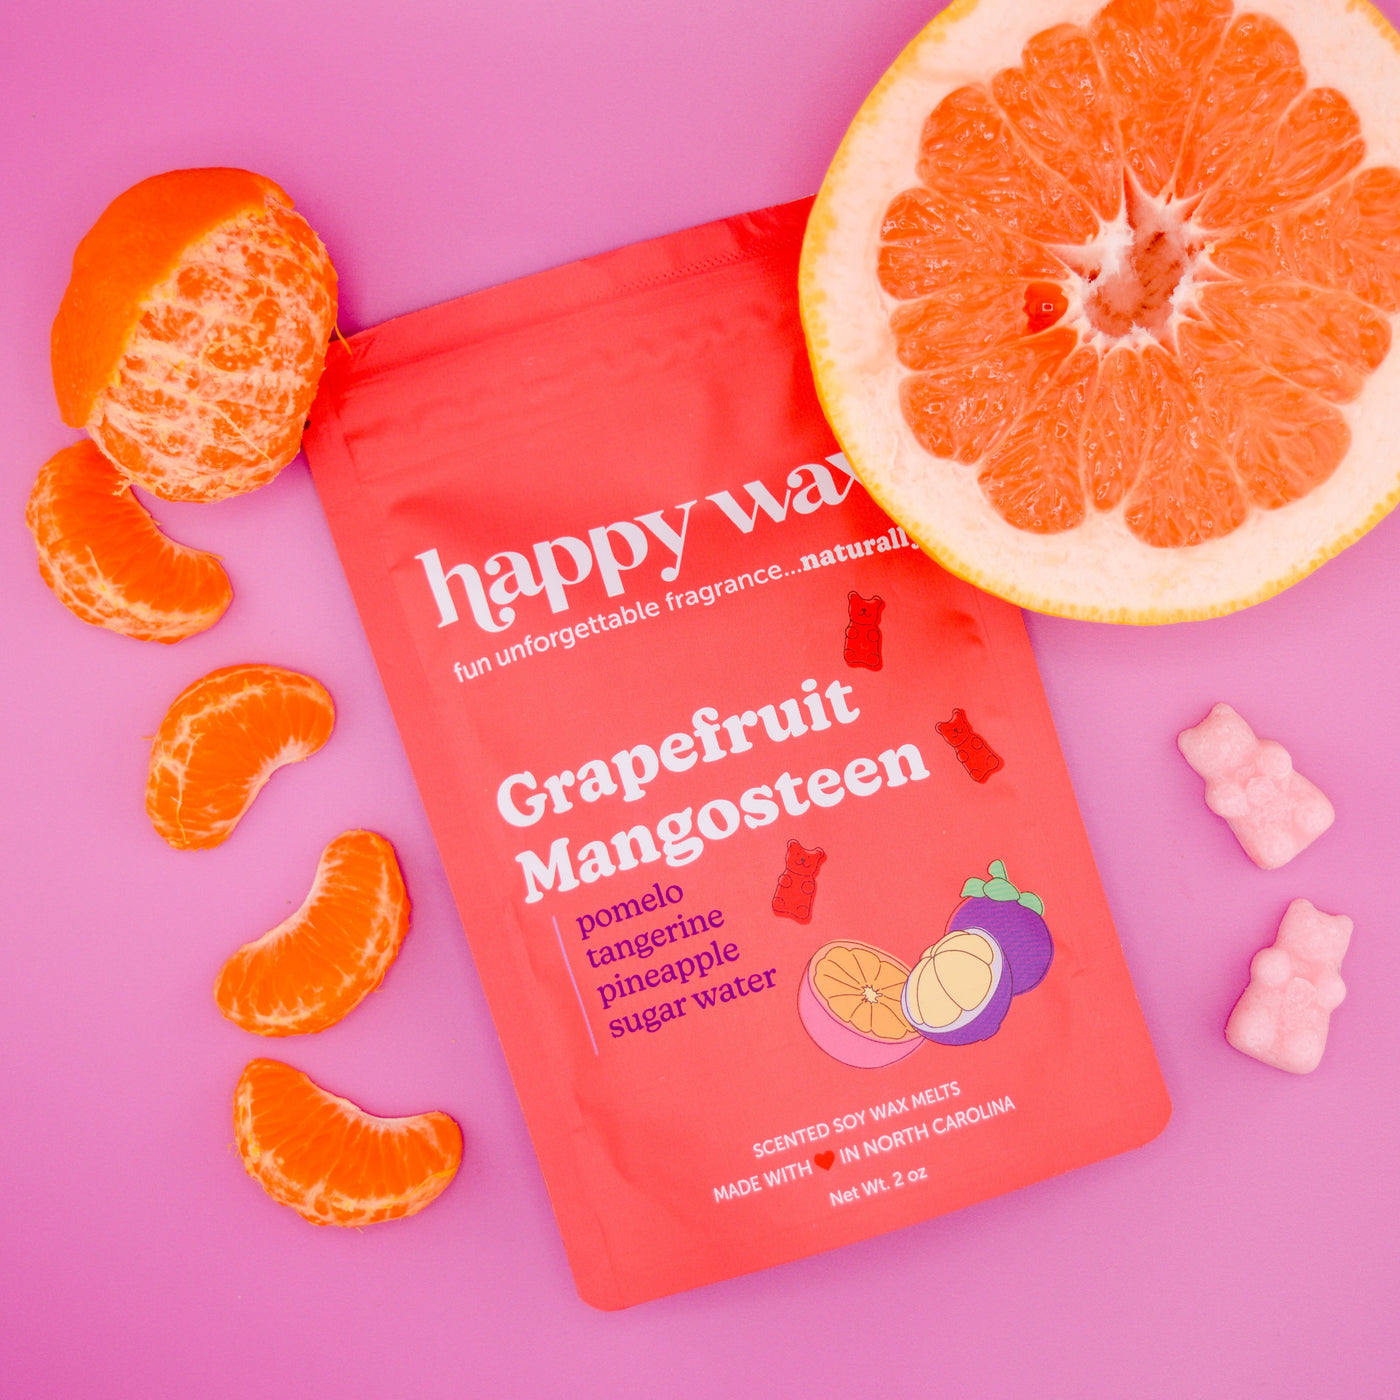 Grapefruit Mangosteen Wax Melts